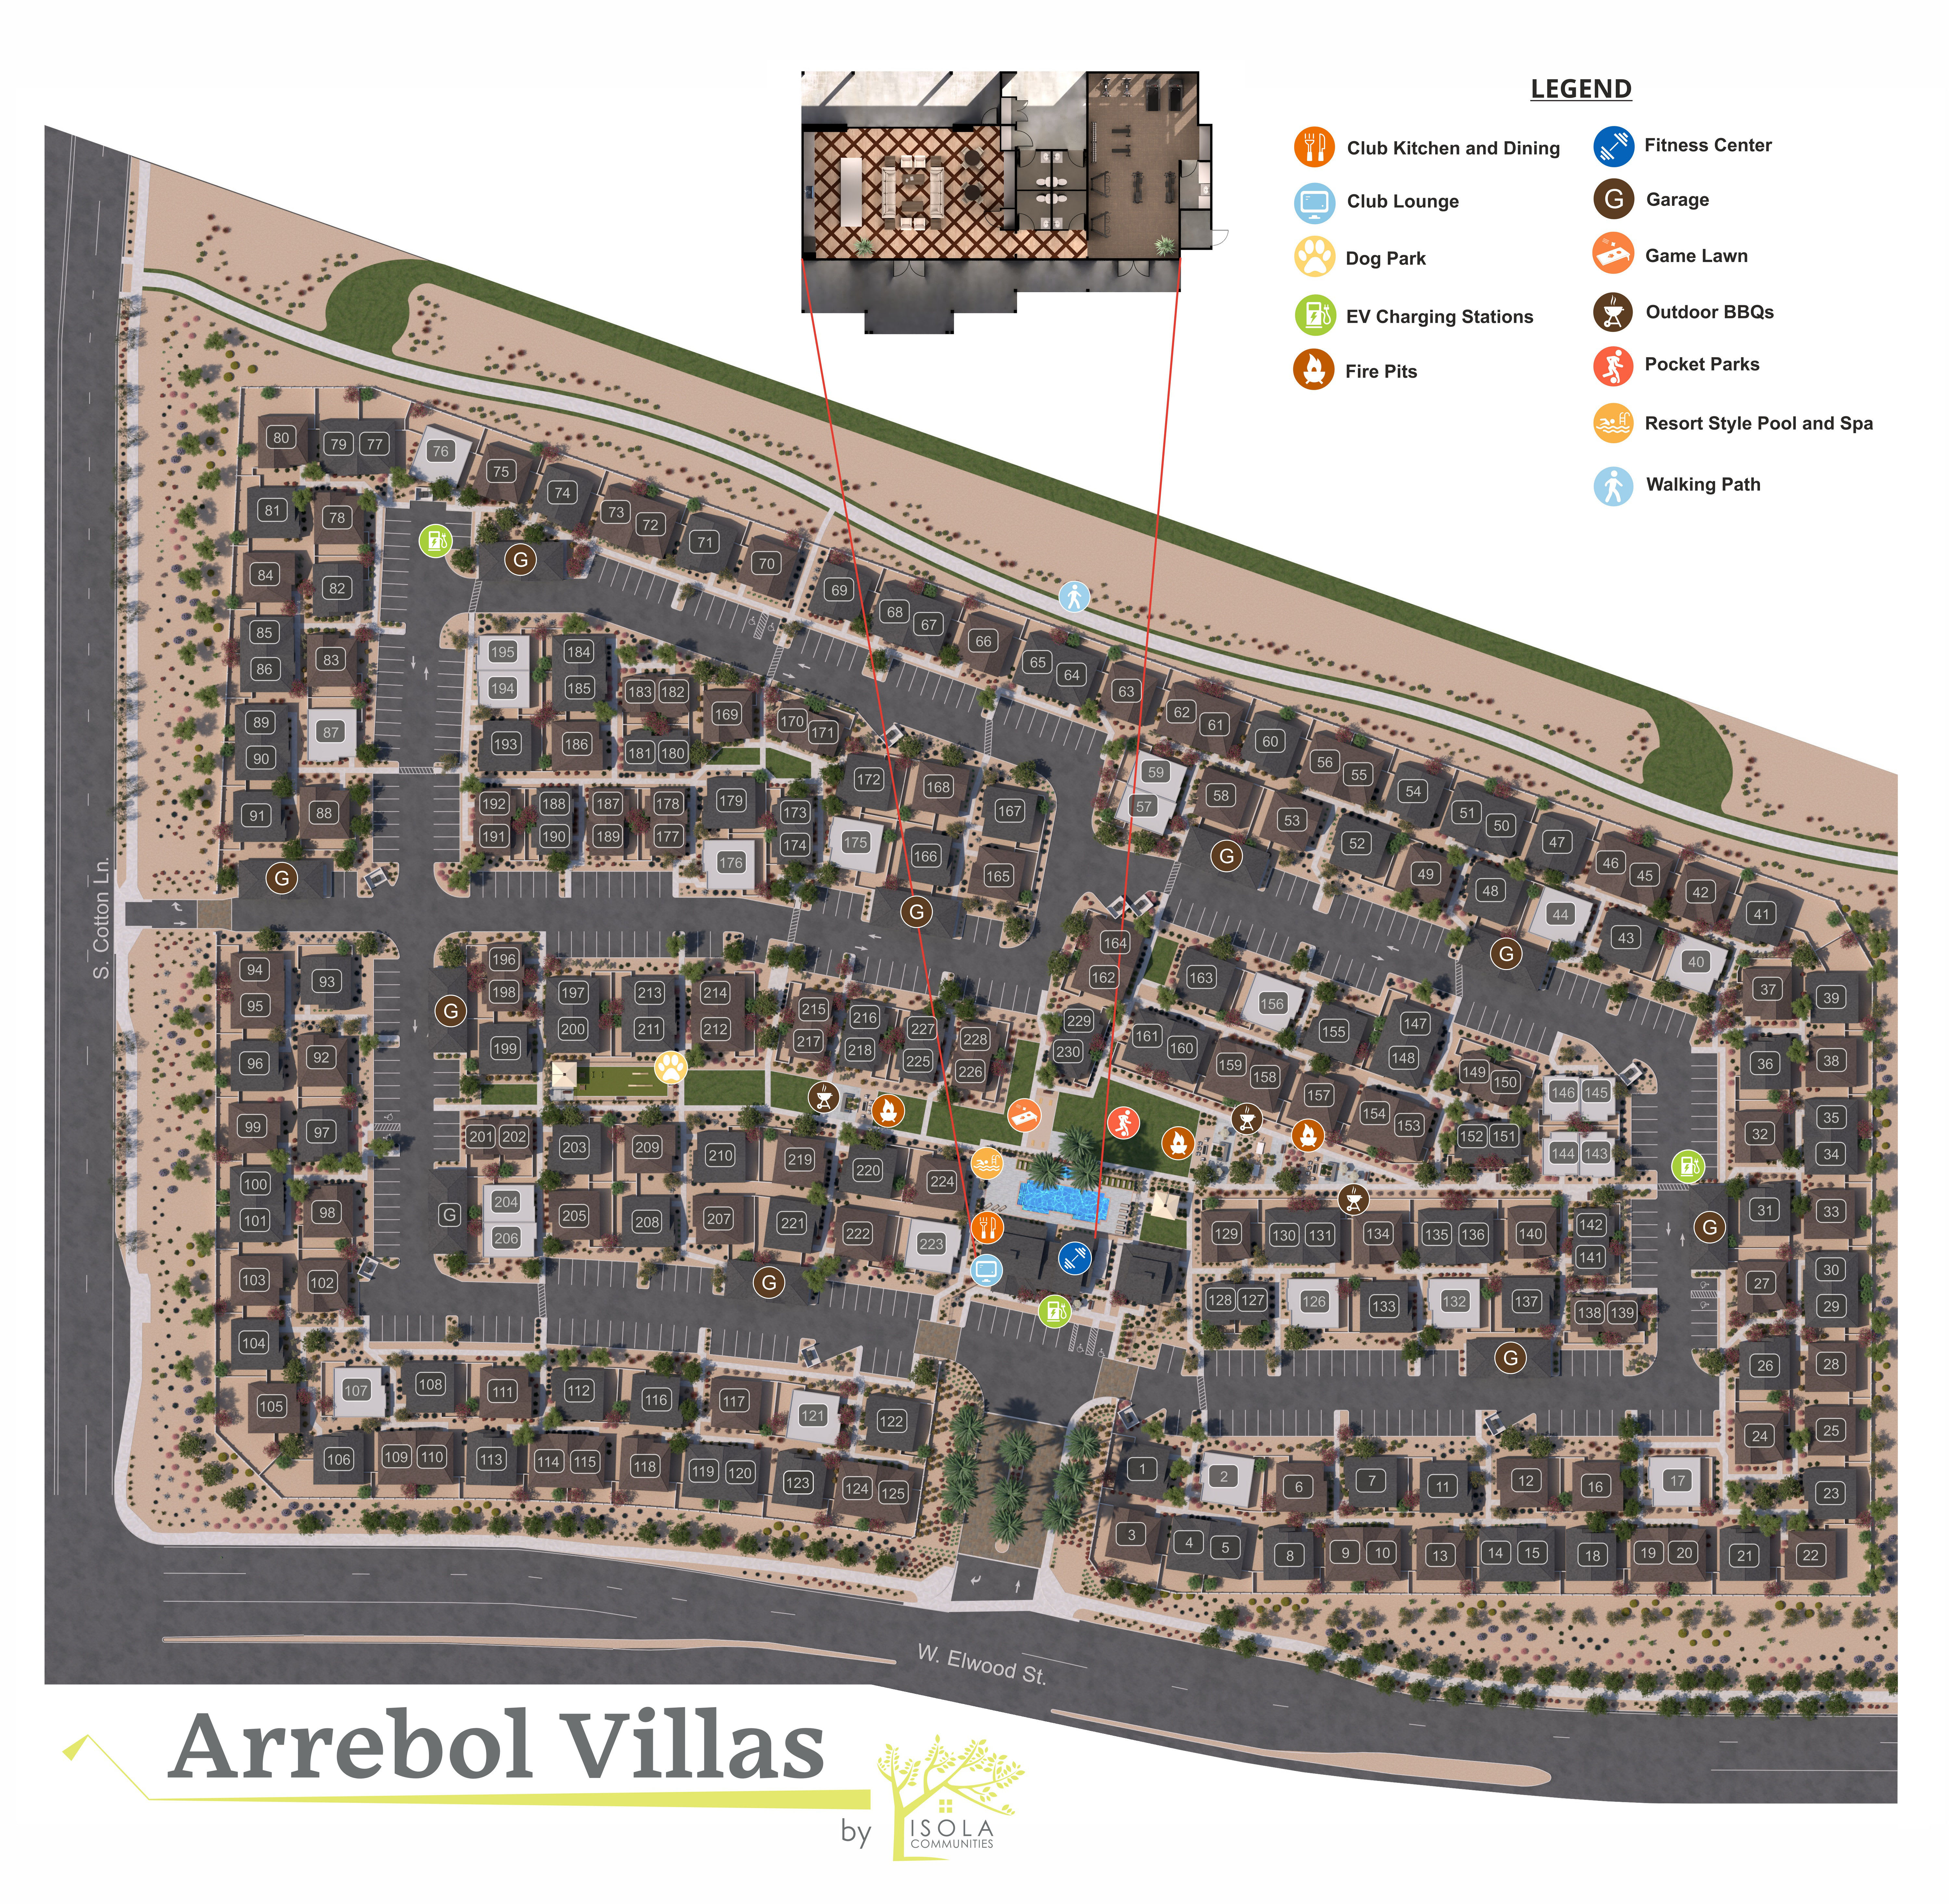 Arrebol Villas site plan